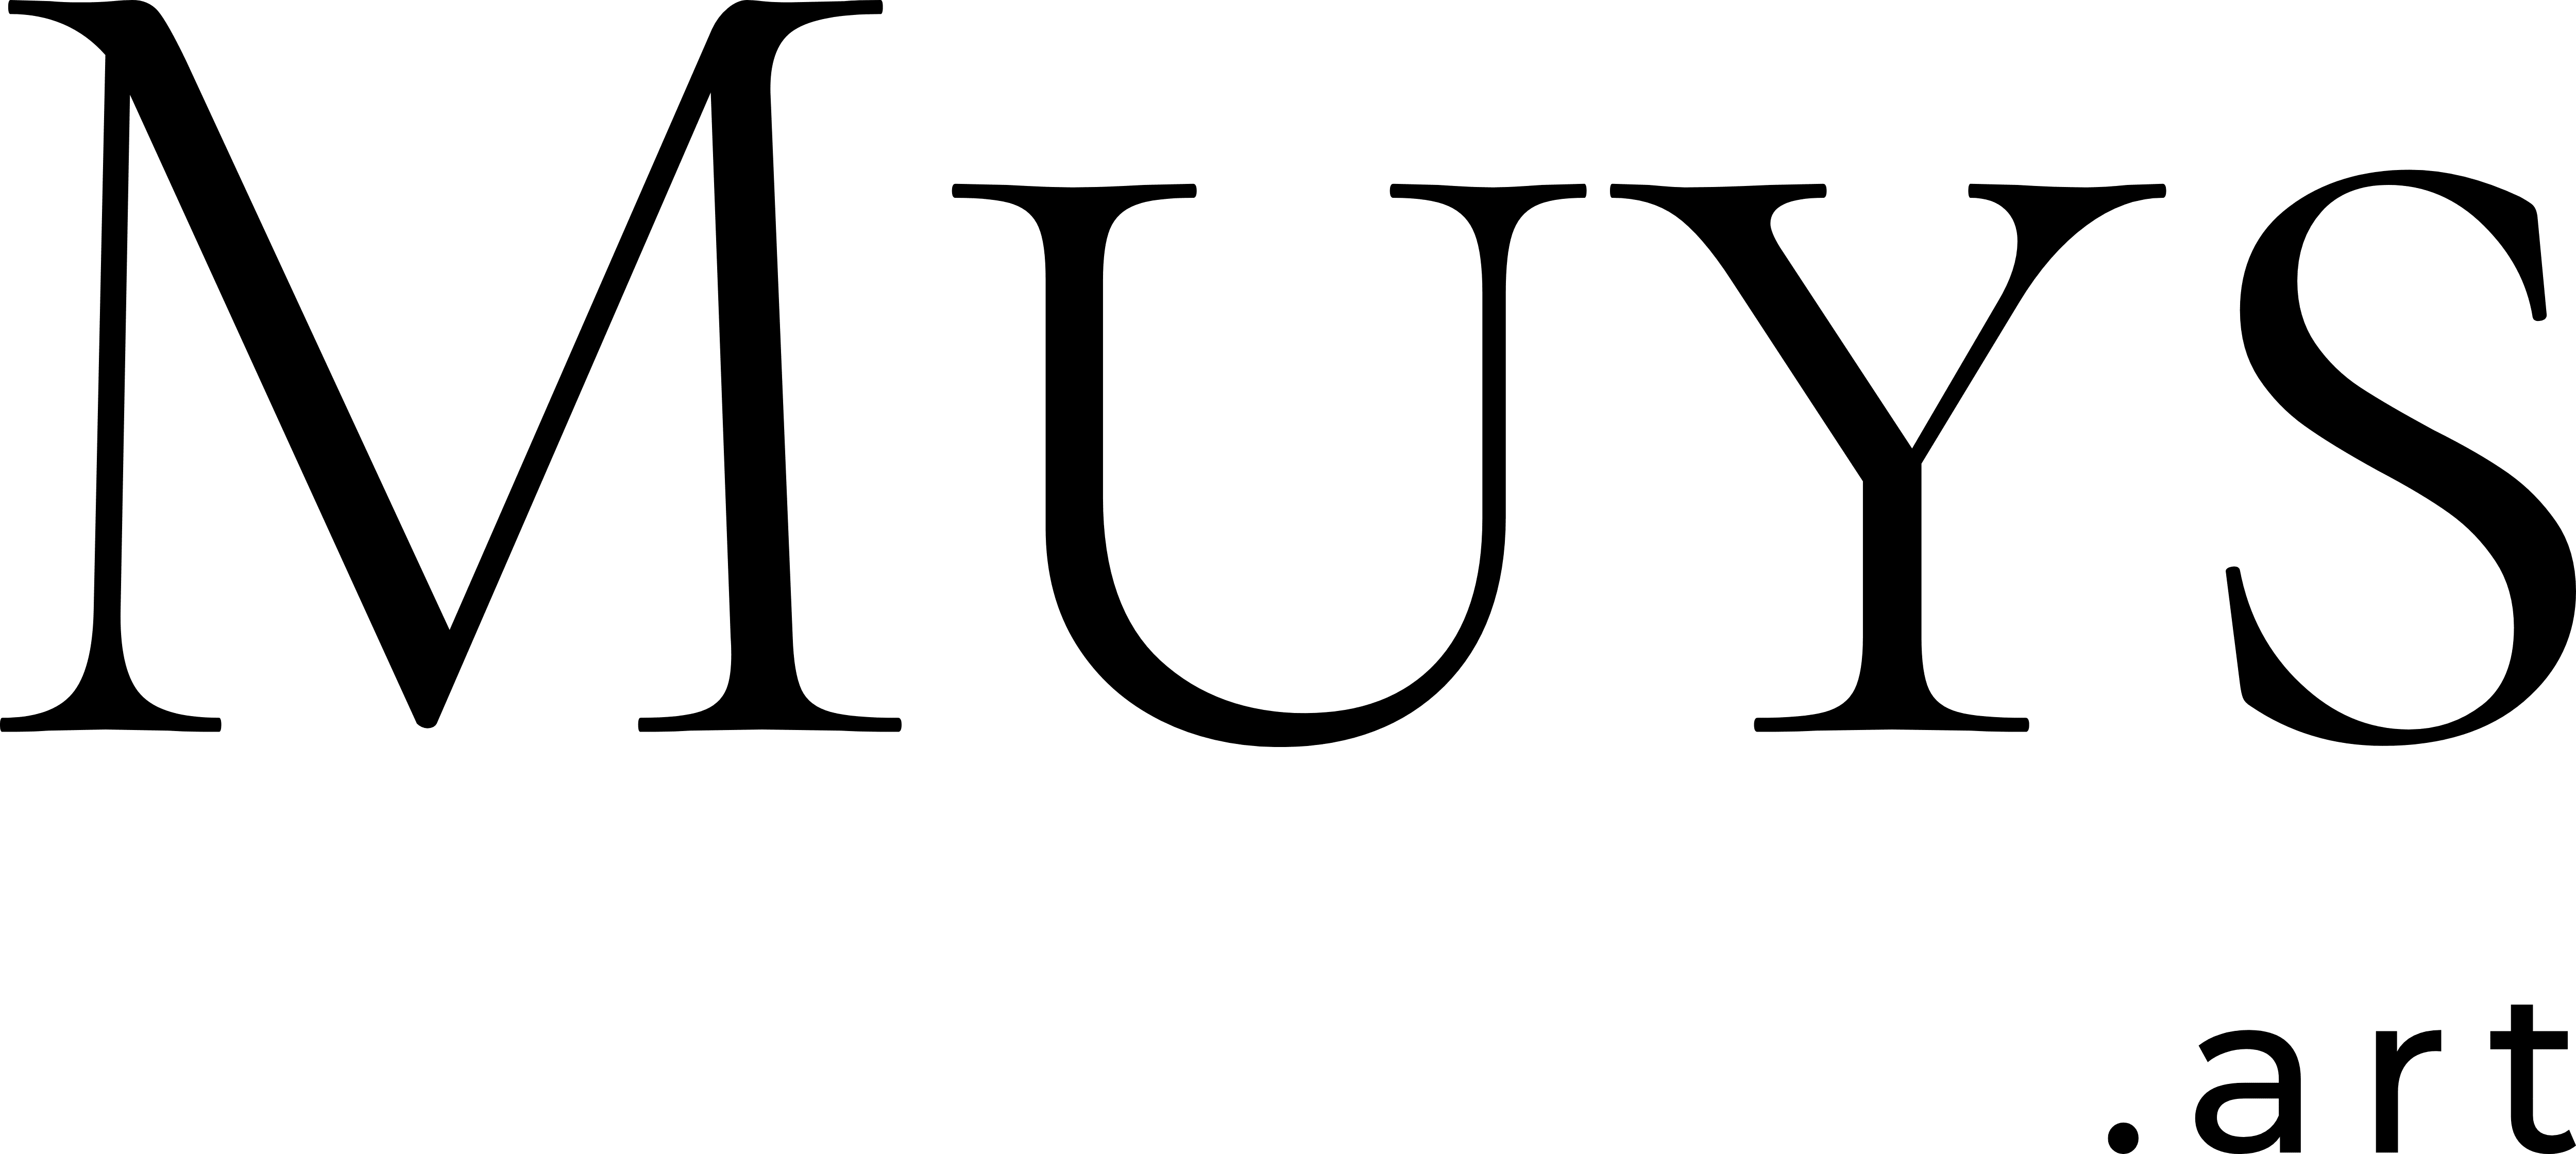 Muys.art company logo